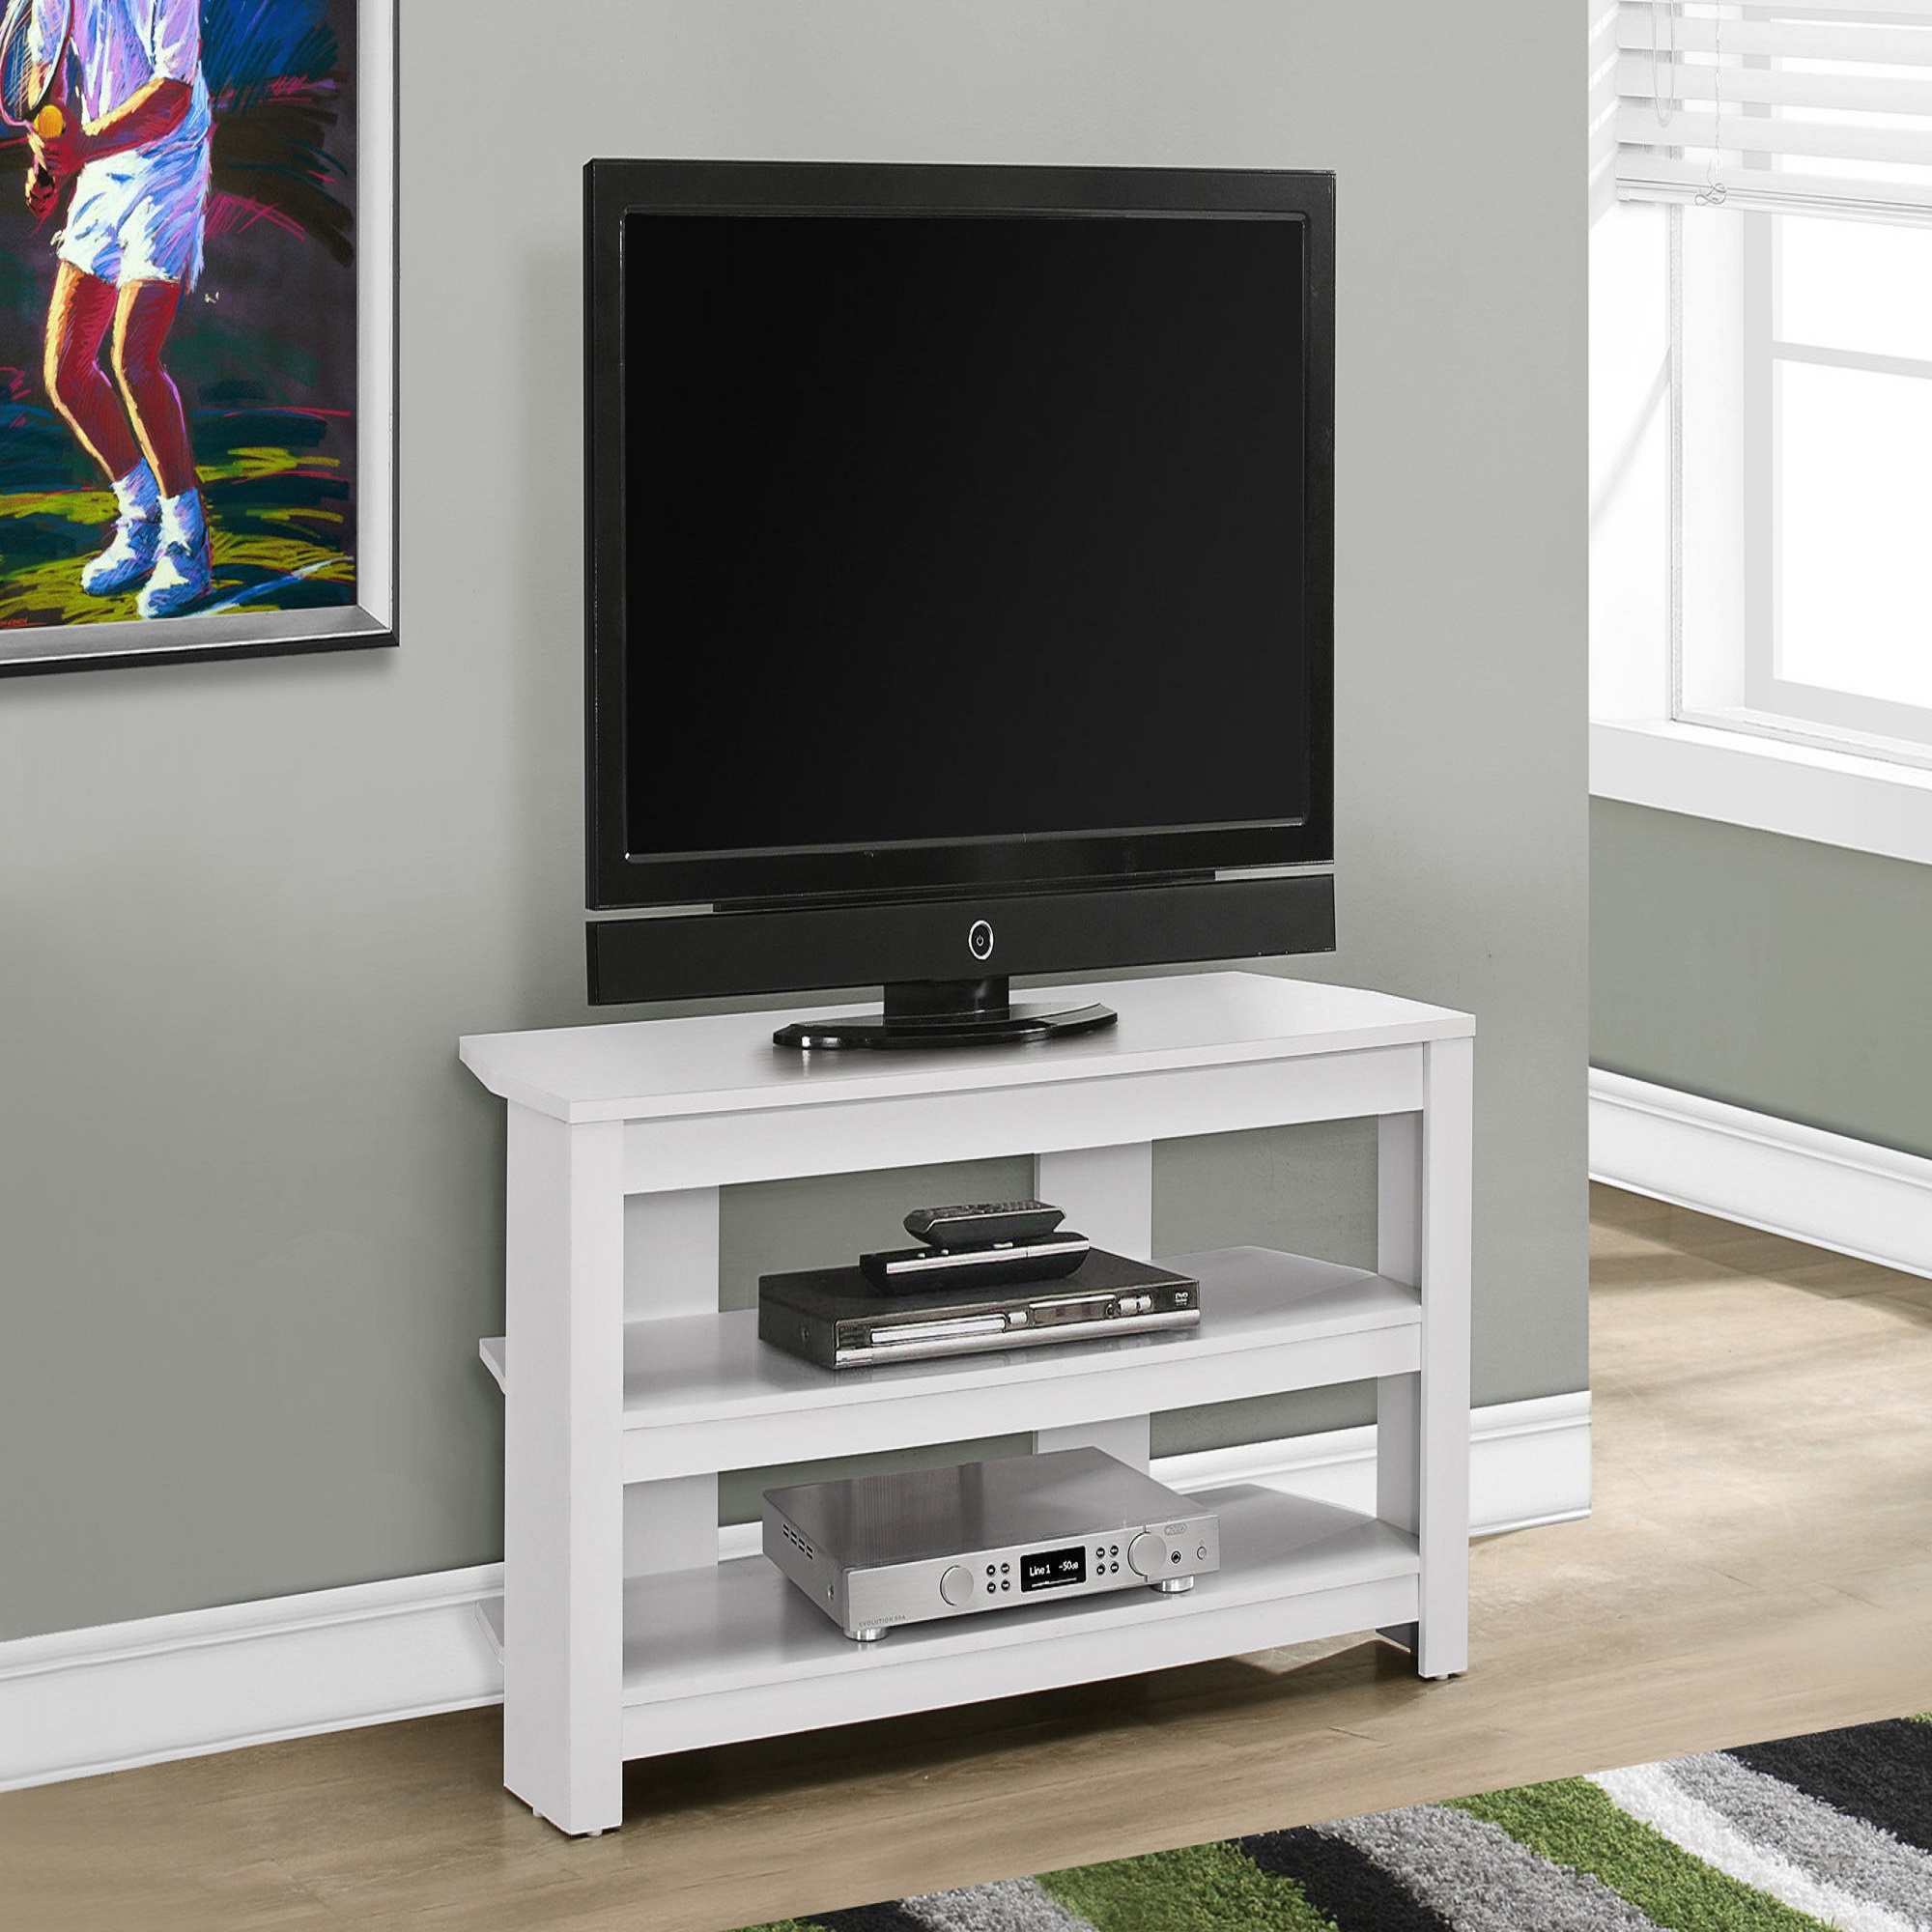 Contemporary Home Living 42" White Contemporary Rectangular TV Stand